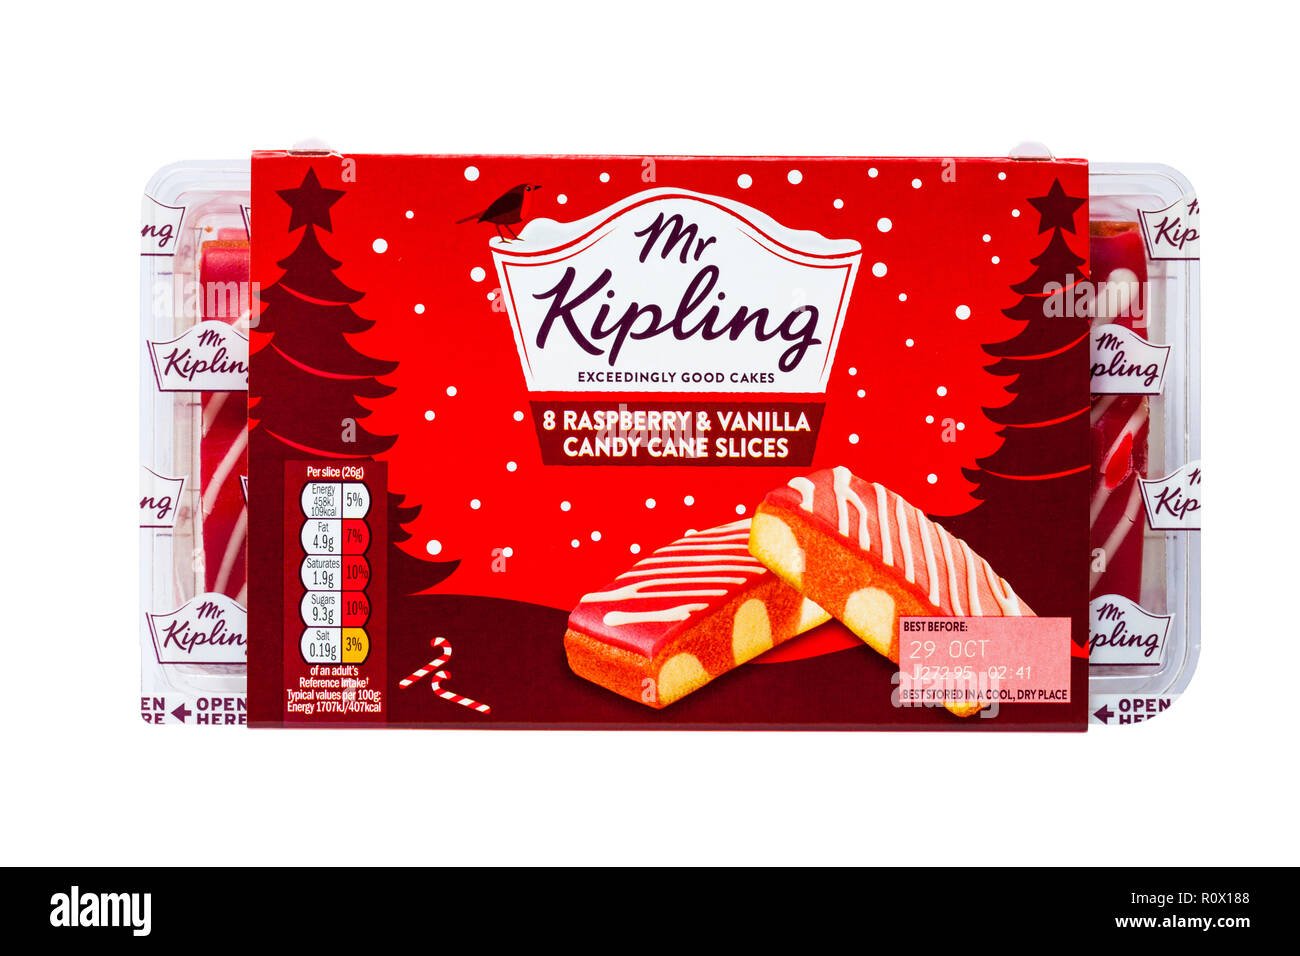 Sachet de Mr Kipling 8 vanille framboise et tranches de canne isolé sur fond blanc - très bons gâteaux Banque D'Images